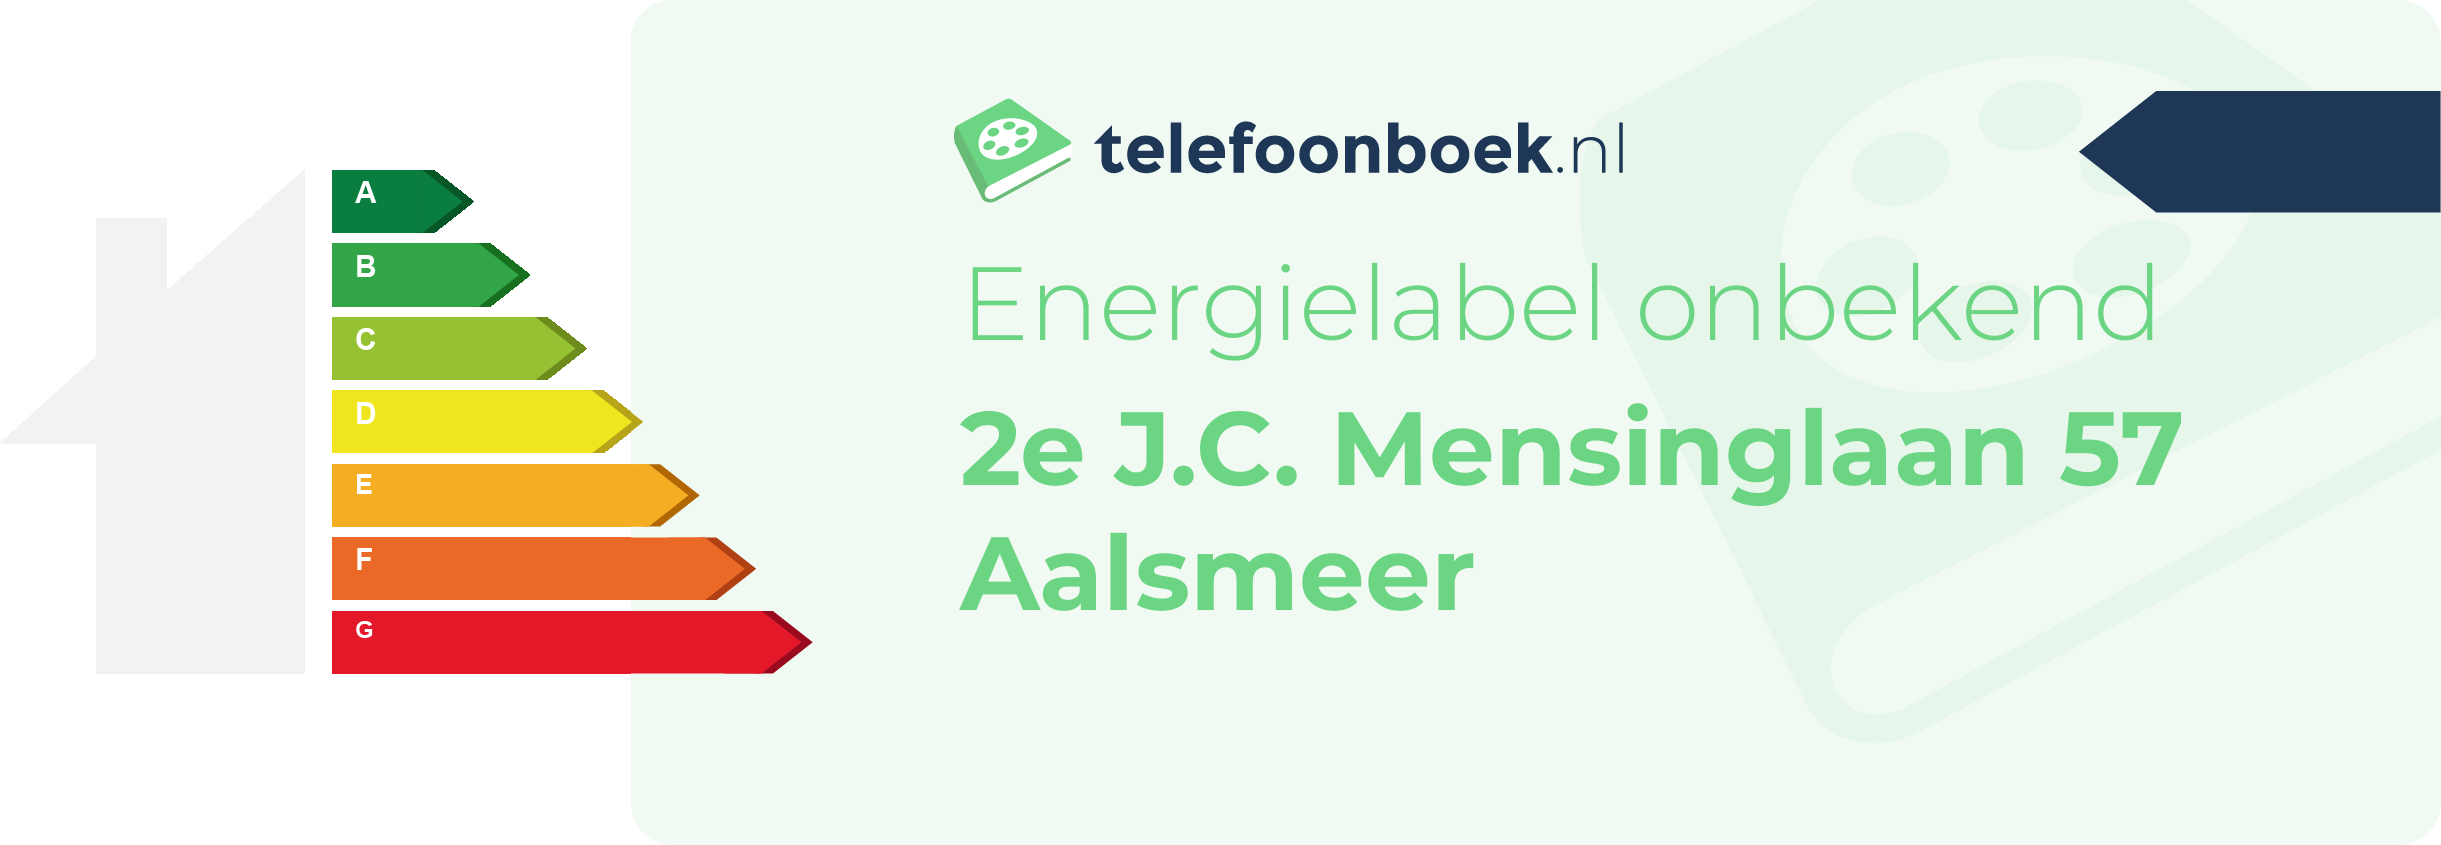 Energielabel 2e J.C. Mensinglaan 57 Aalsmeer